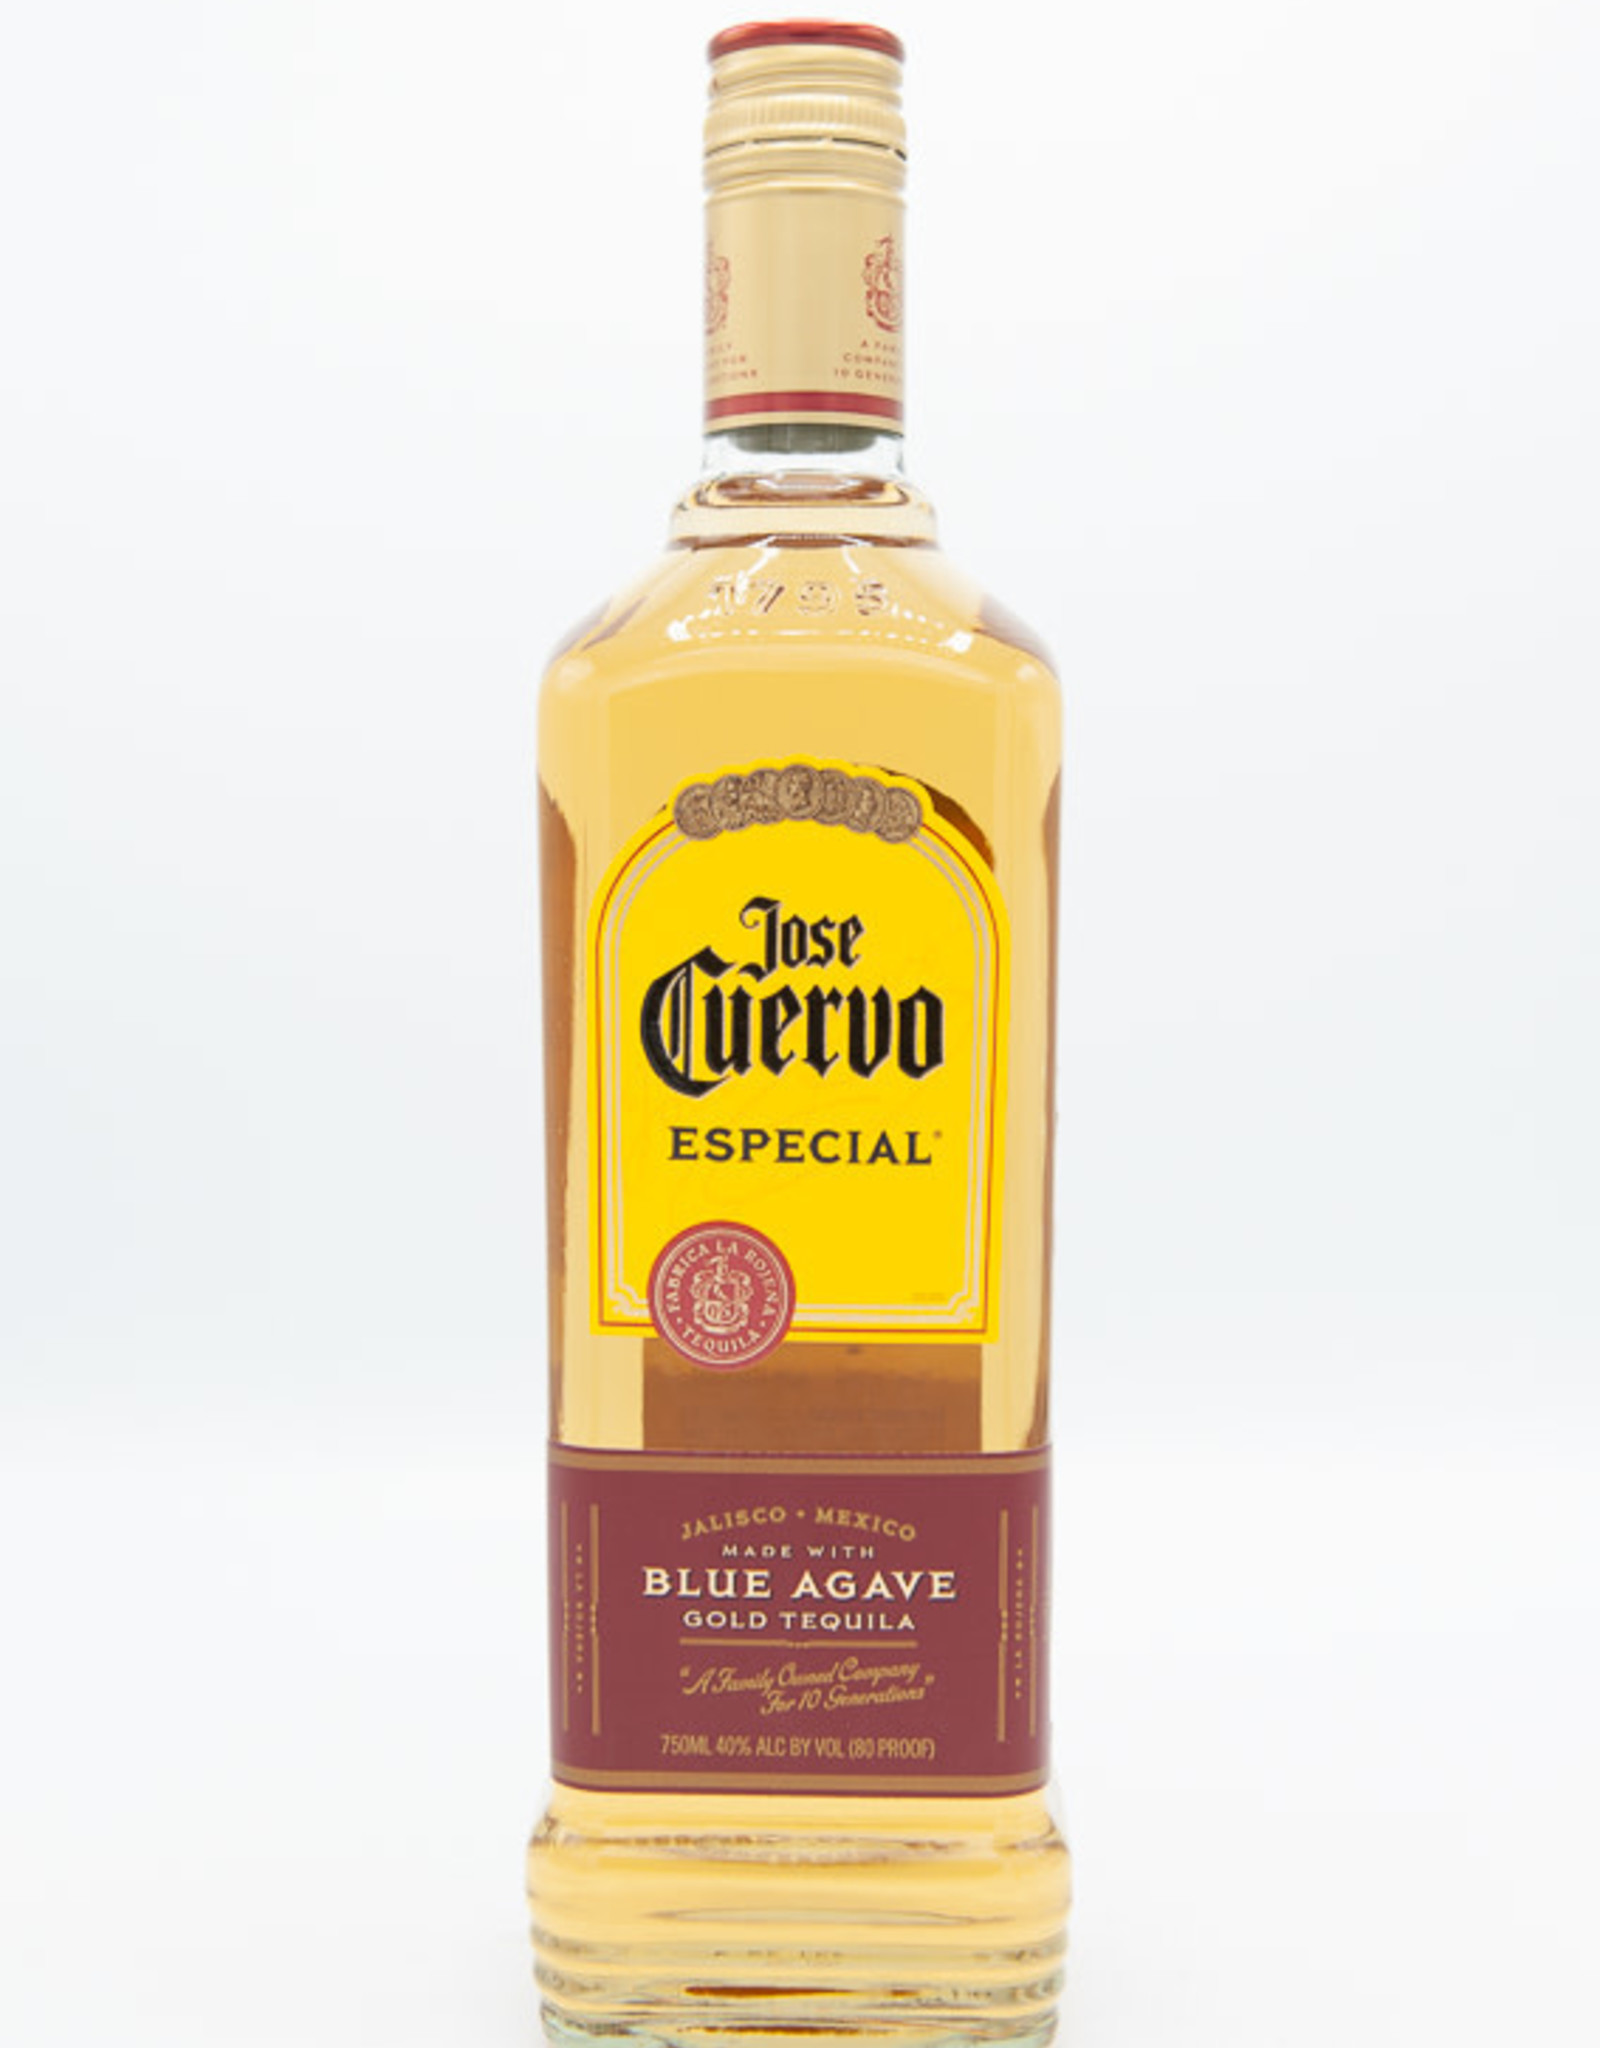 Jose Cuervo Jose Cuervo Gold Tequila